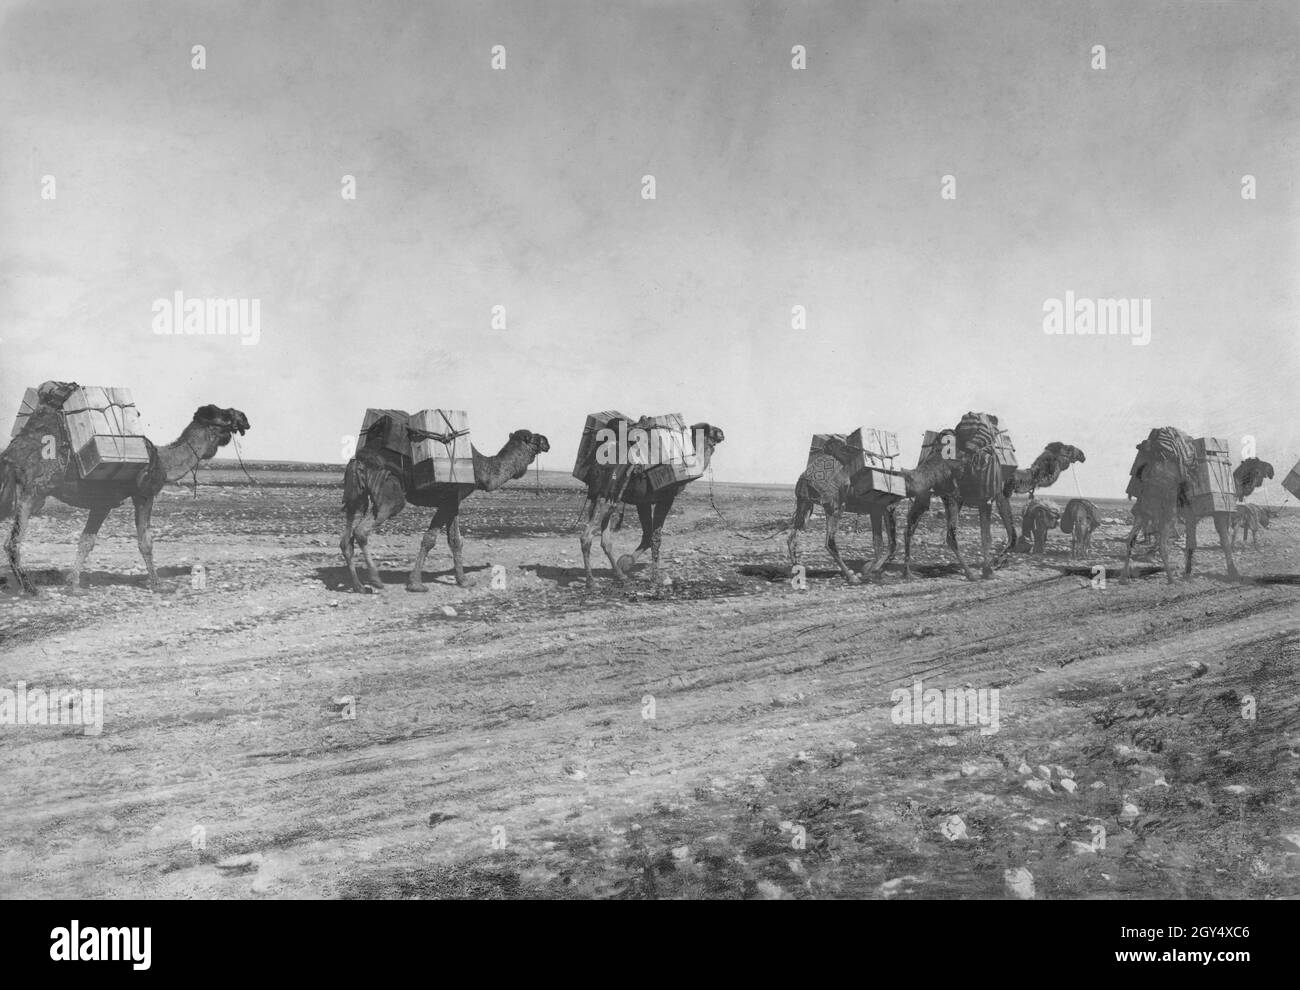 Ein Benzintransport mit einer Kamelkarawane in der Wüste zwischen Syrien und dem Irak. Kamele sind das günstigste Transportmittel. Undatierte Fotografie, ca. 1932. [Automatisierte Übersetzung] Stockfoto